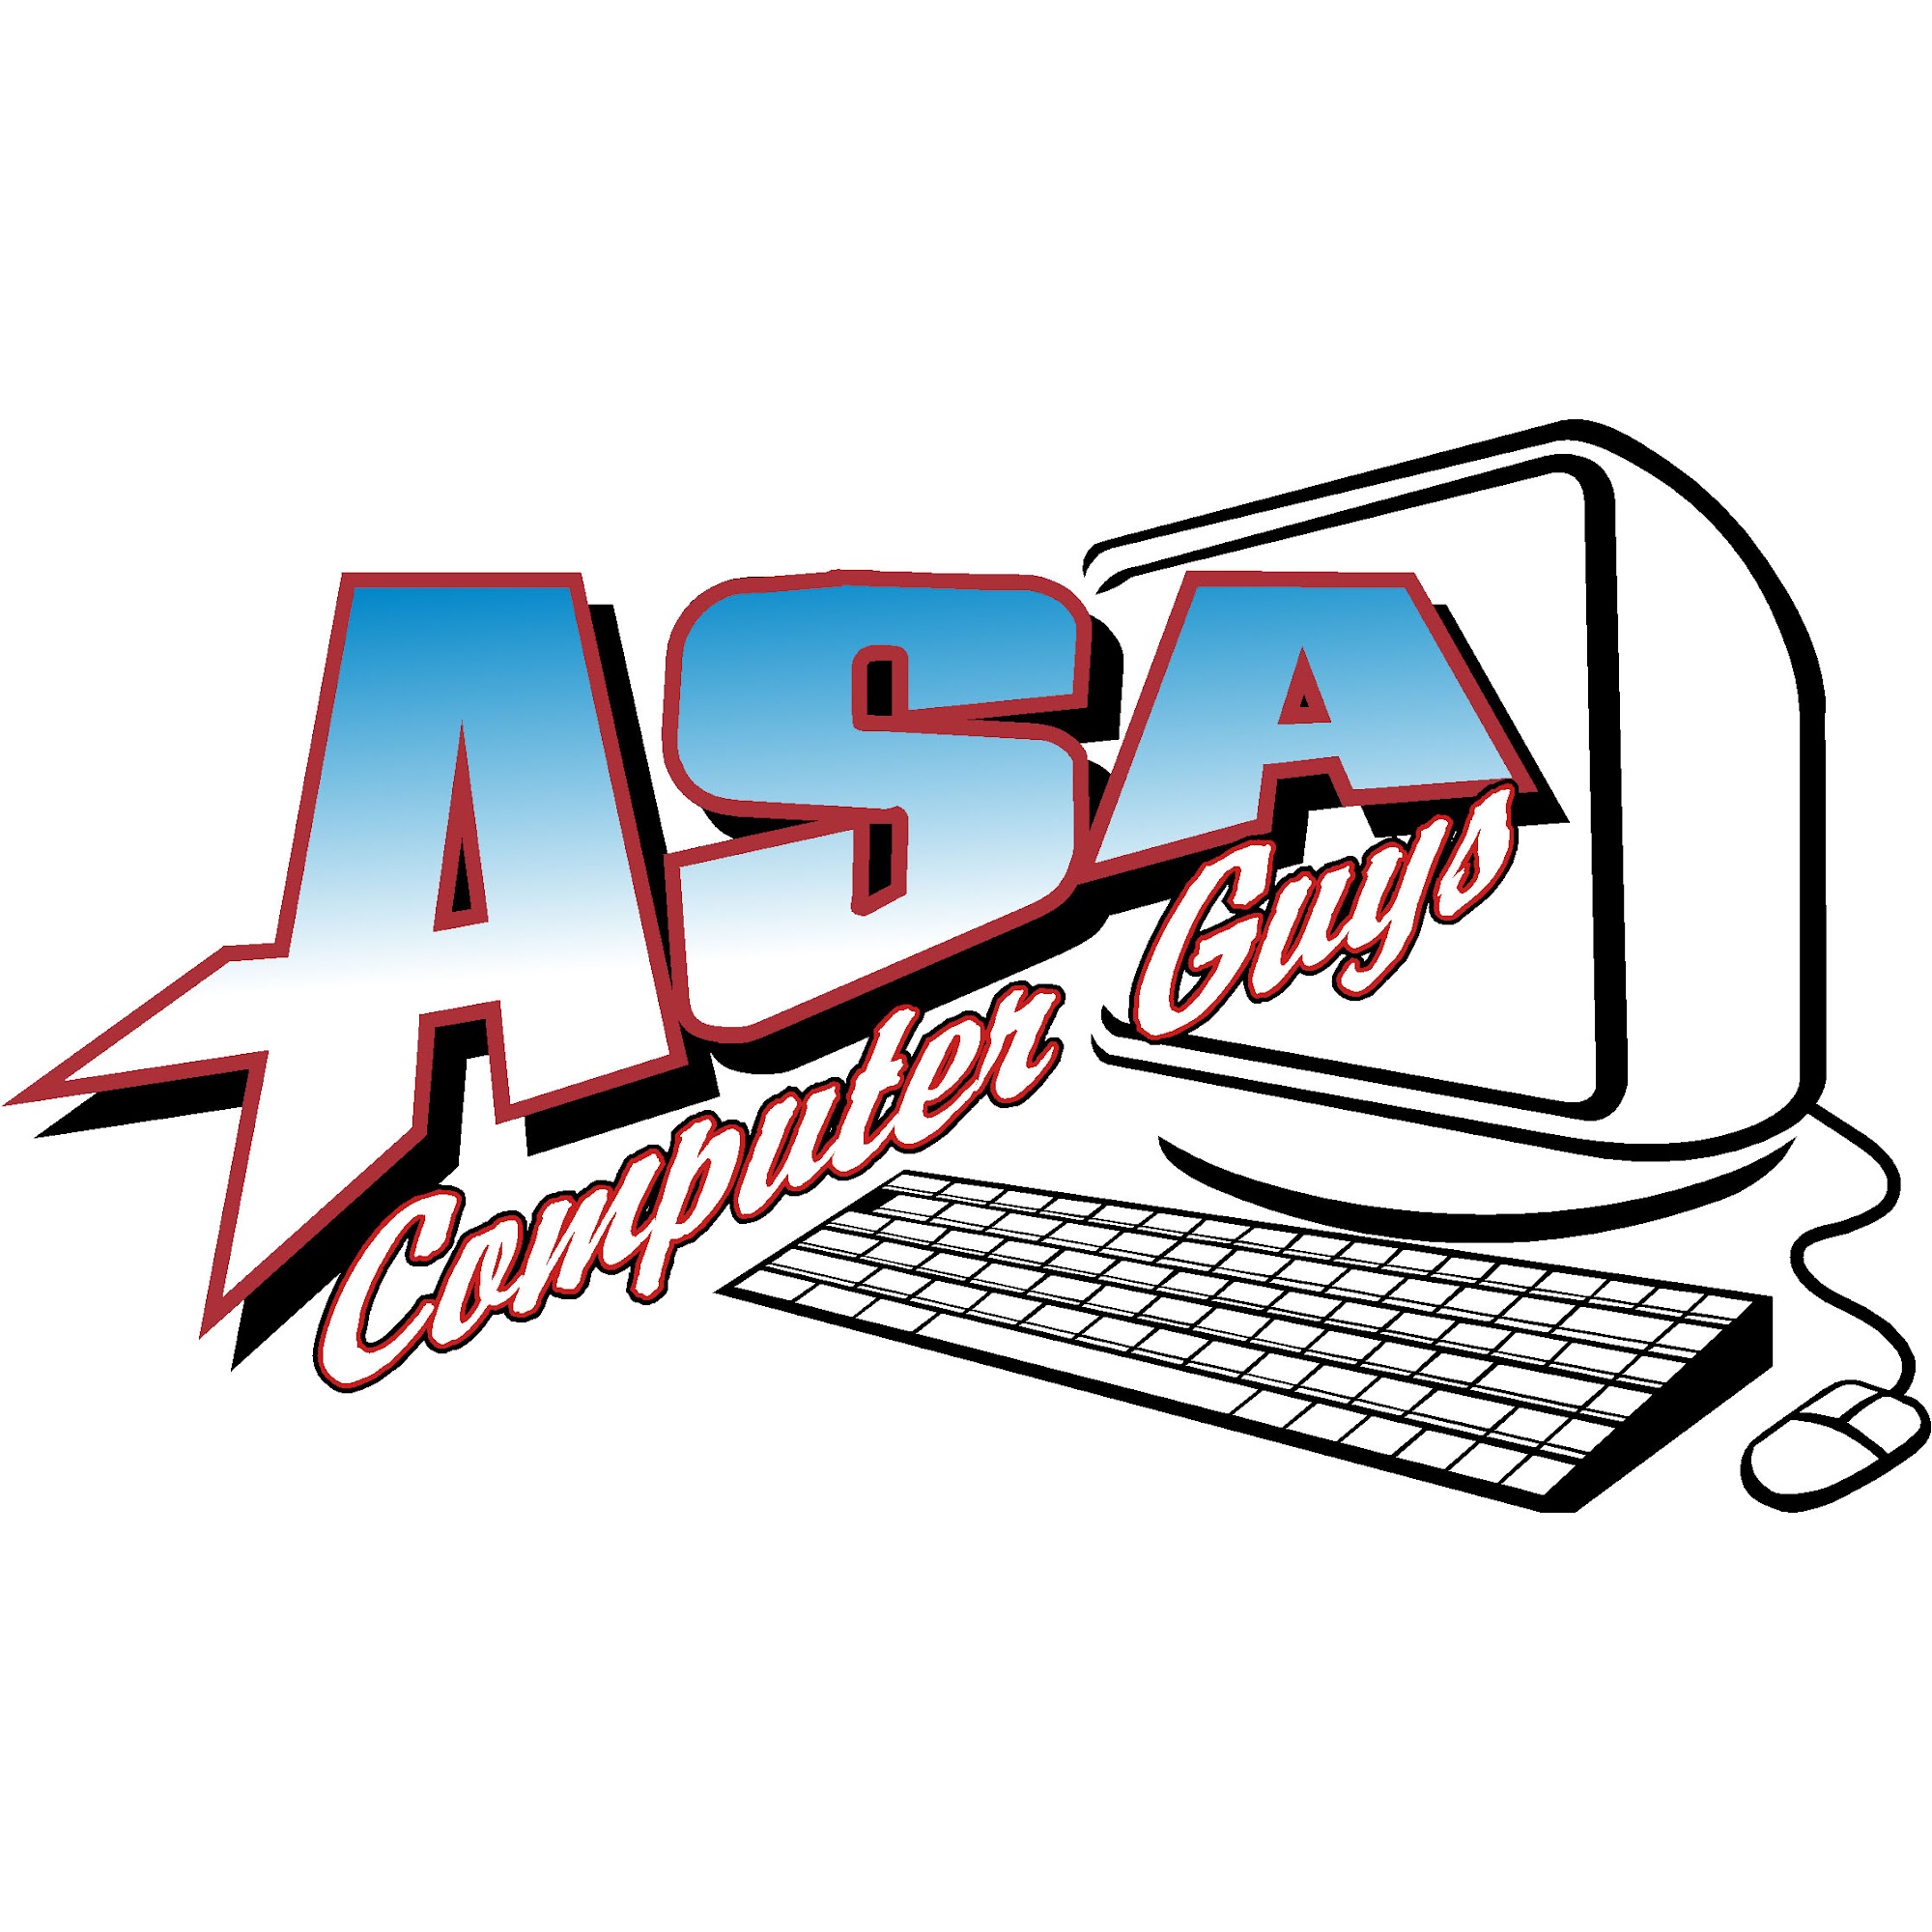 ASA Computer Guys